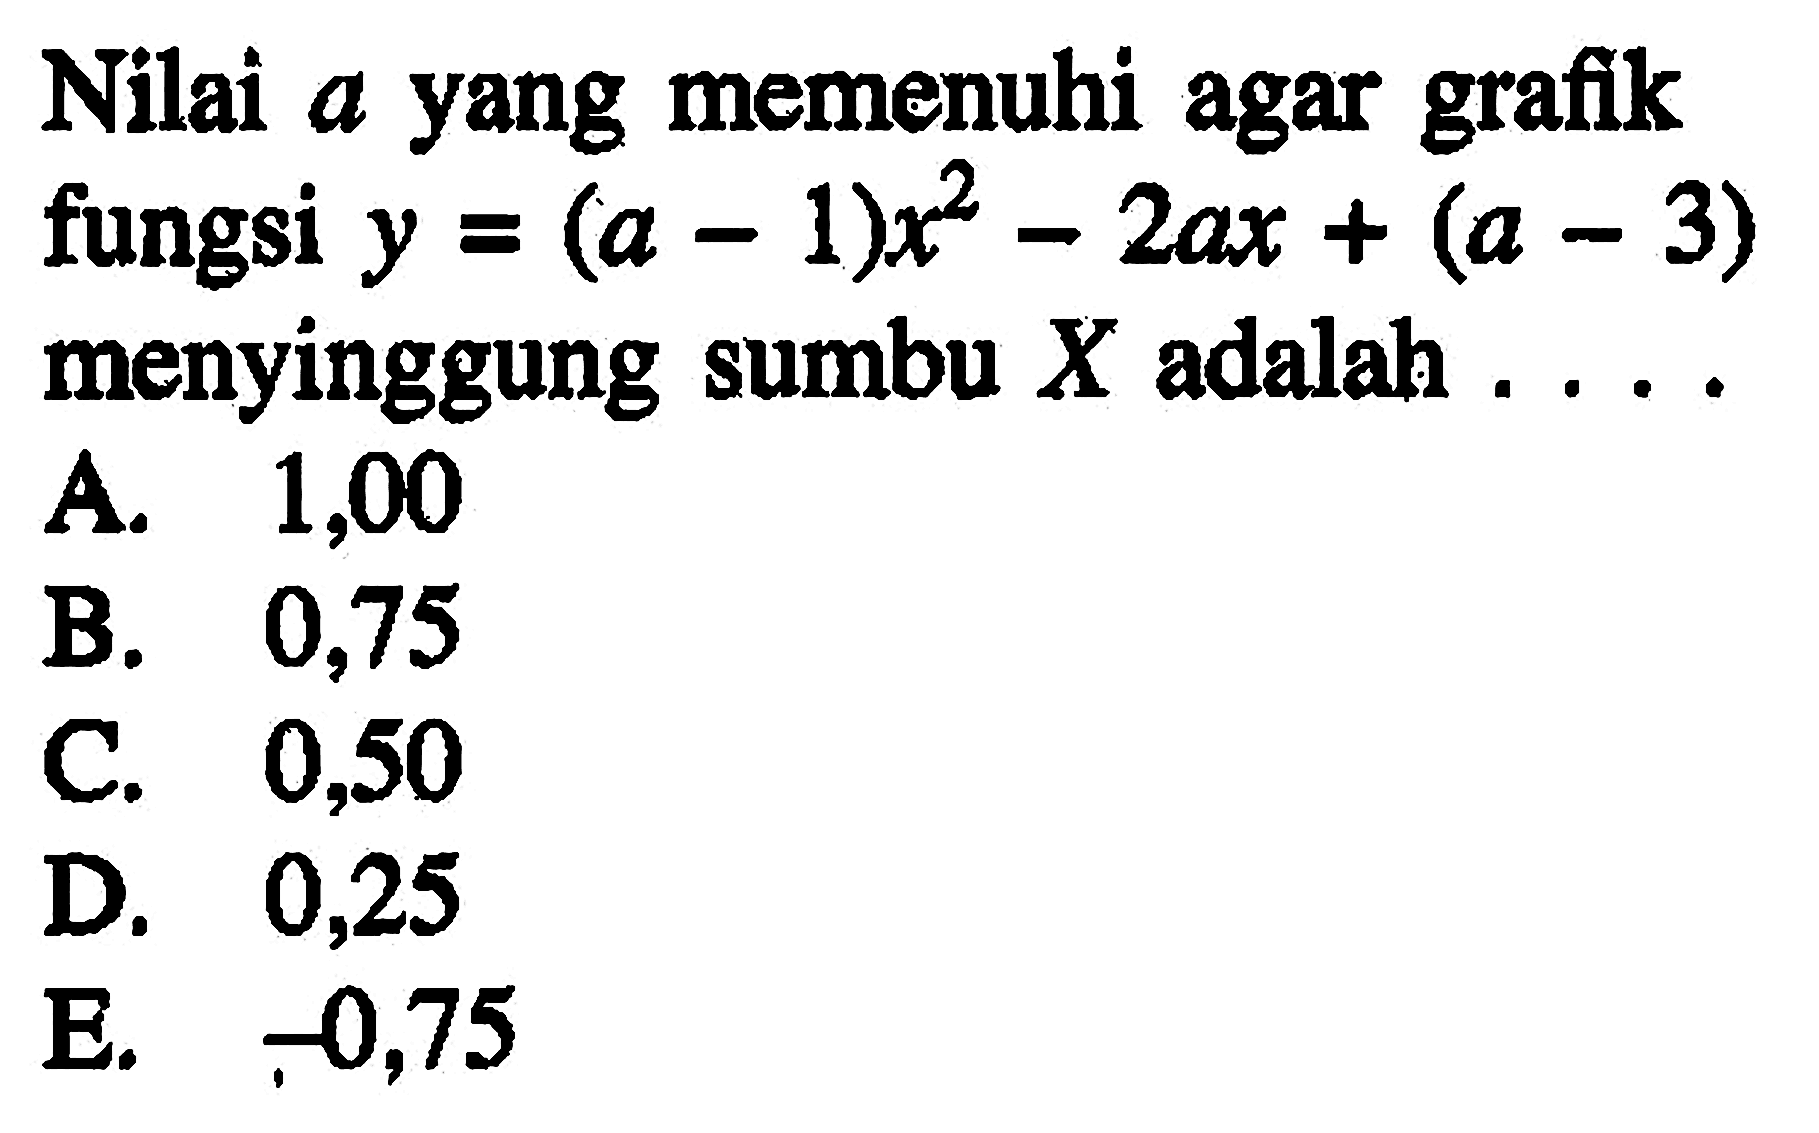 Nilai a yang memenuhi agar grafik fungsi y = (a - 1)x^2 - 2ax + (a - 3) menyinggung sumbu X adalah...